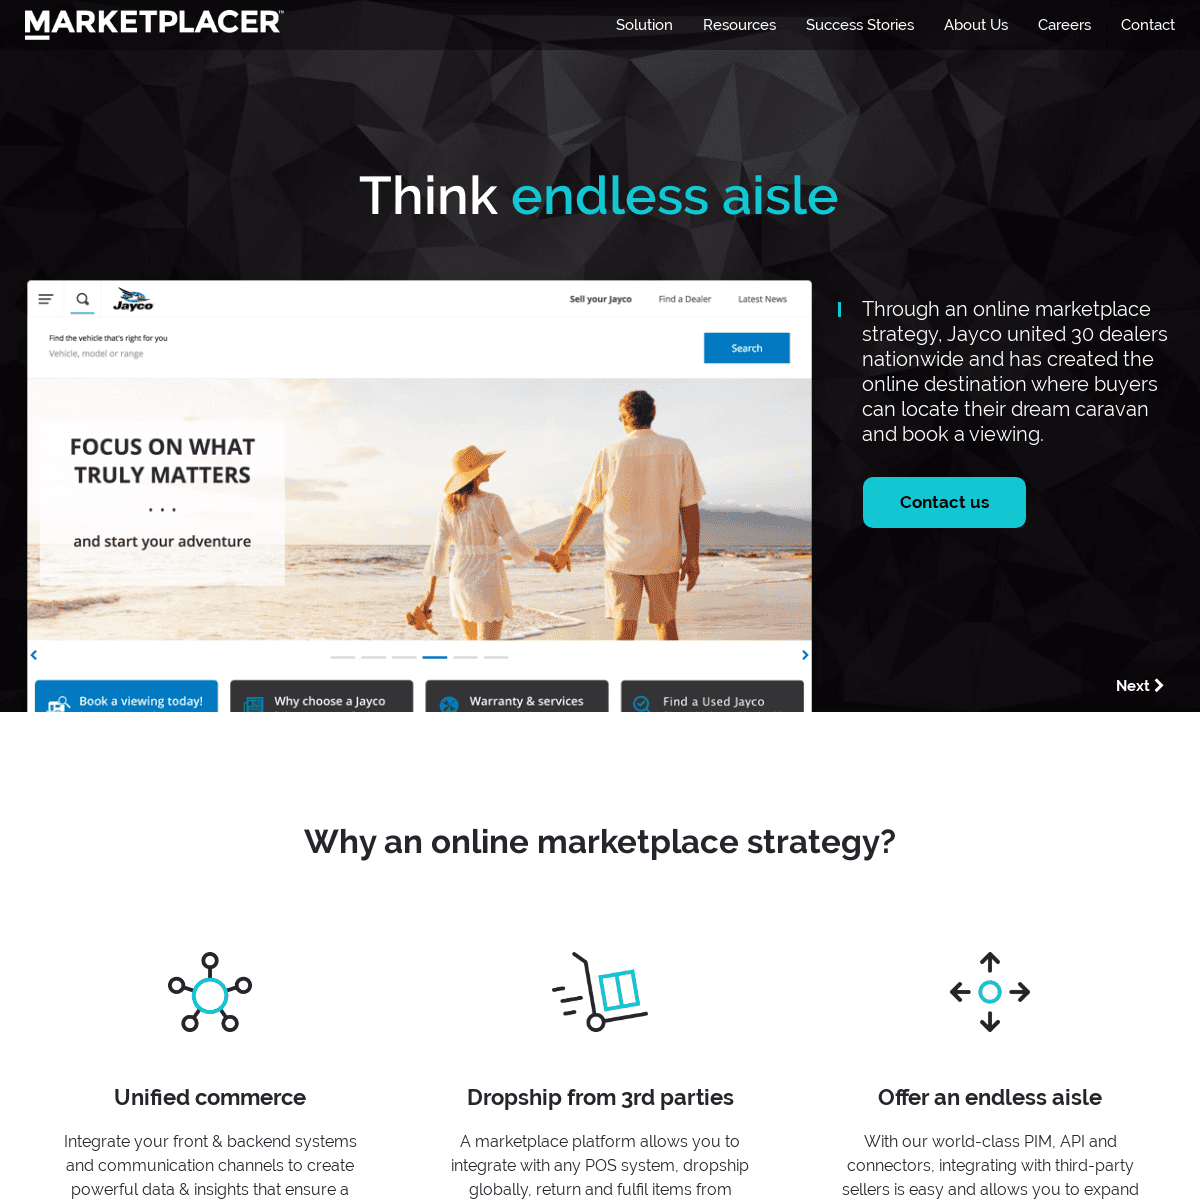 A complete backup of marketplacer.com